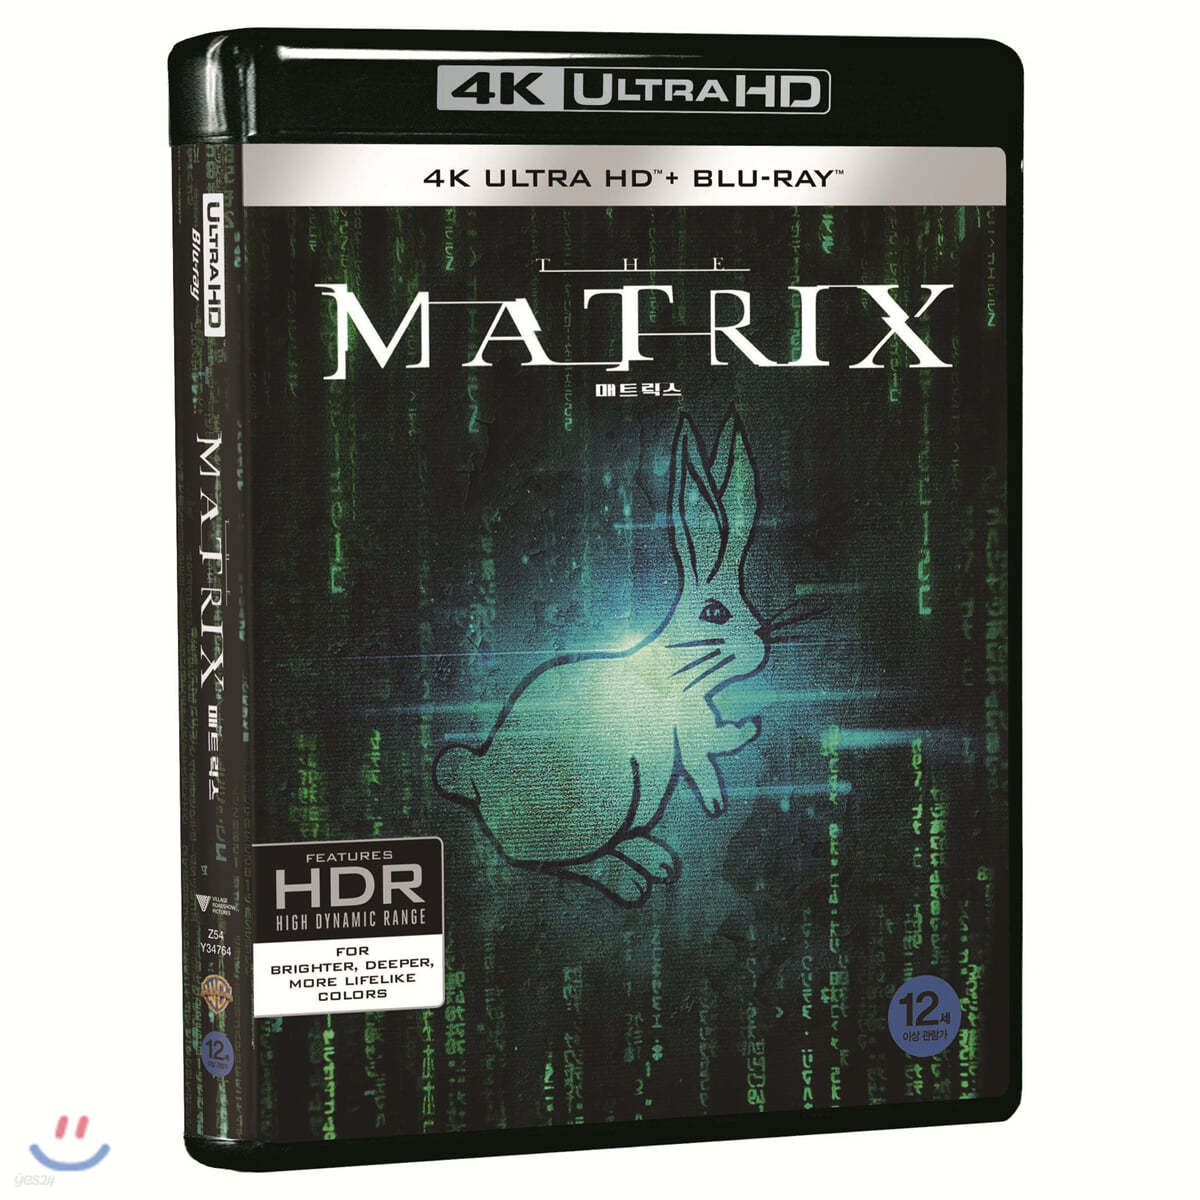 매트릭스 (3Disc 4K UHD 일반판) : 블루레이